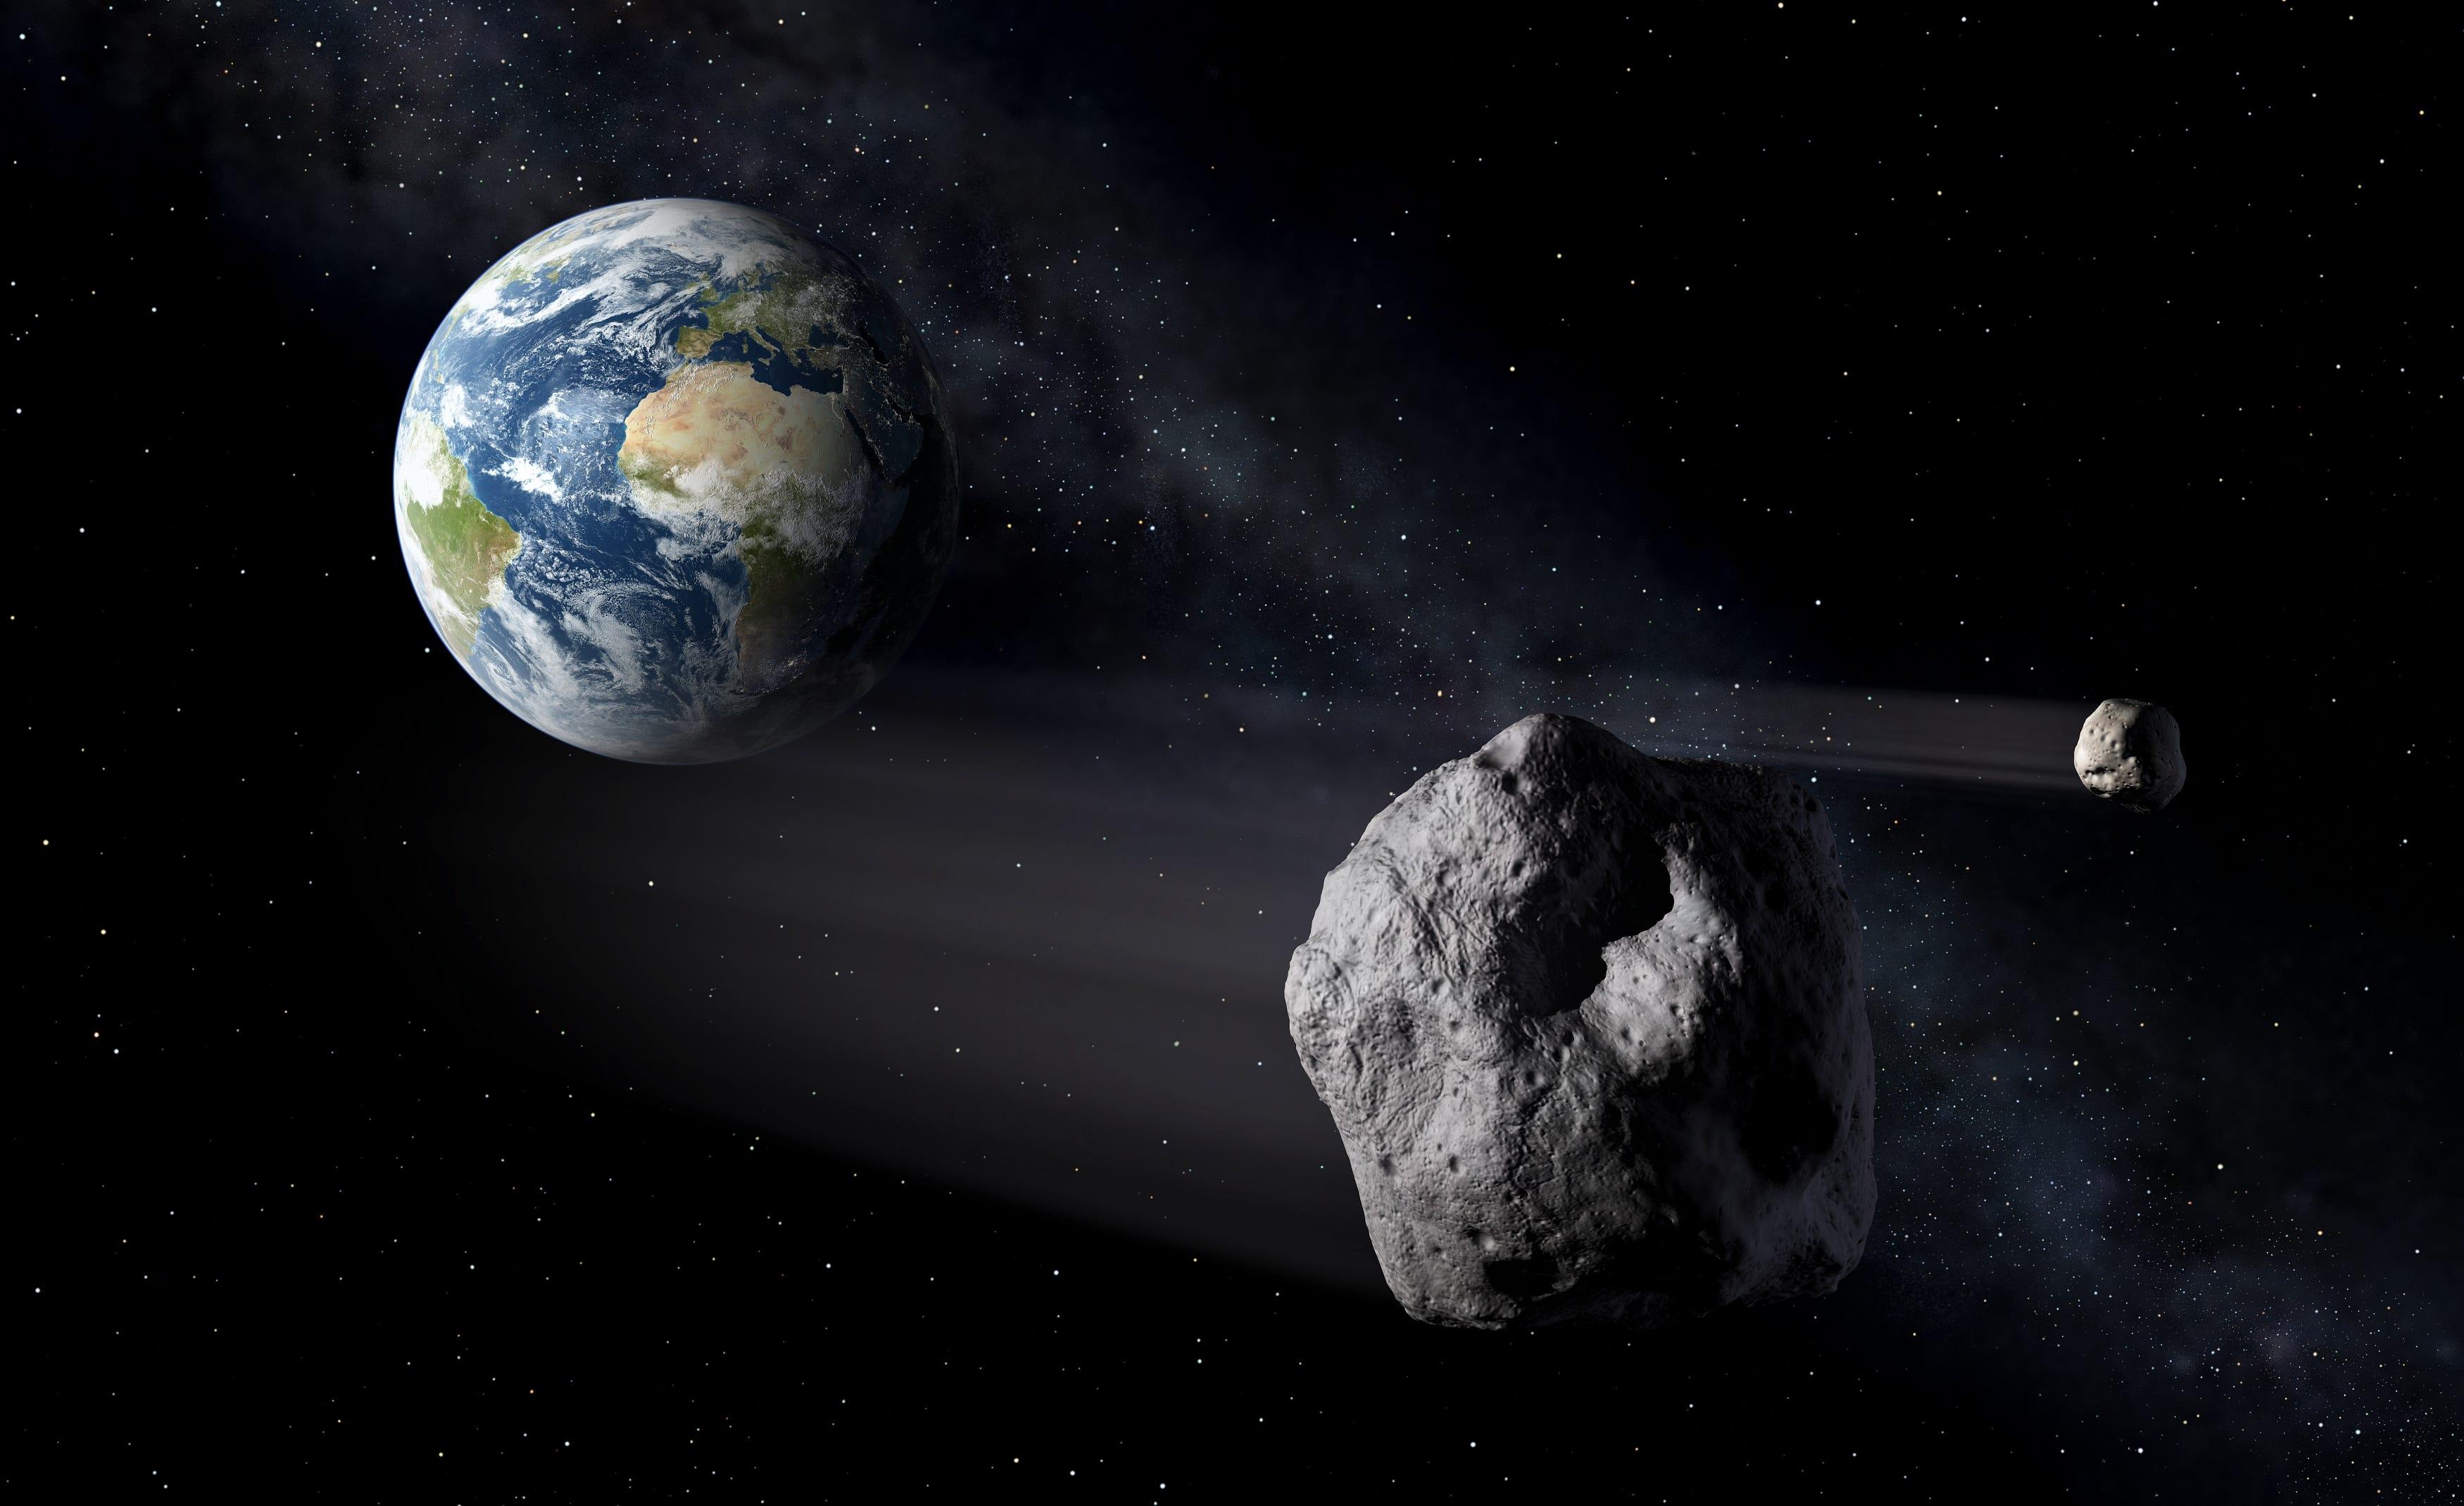 東京タワーサイズの小惑星が地球付近を通過…次にやってくる8年後は肉眼 